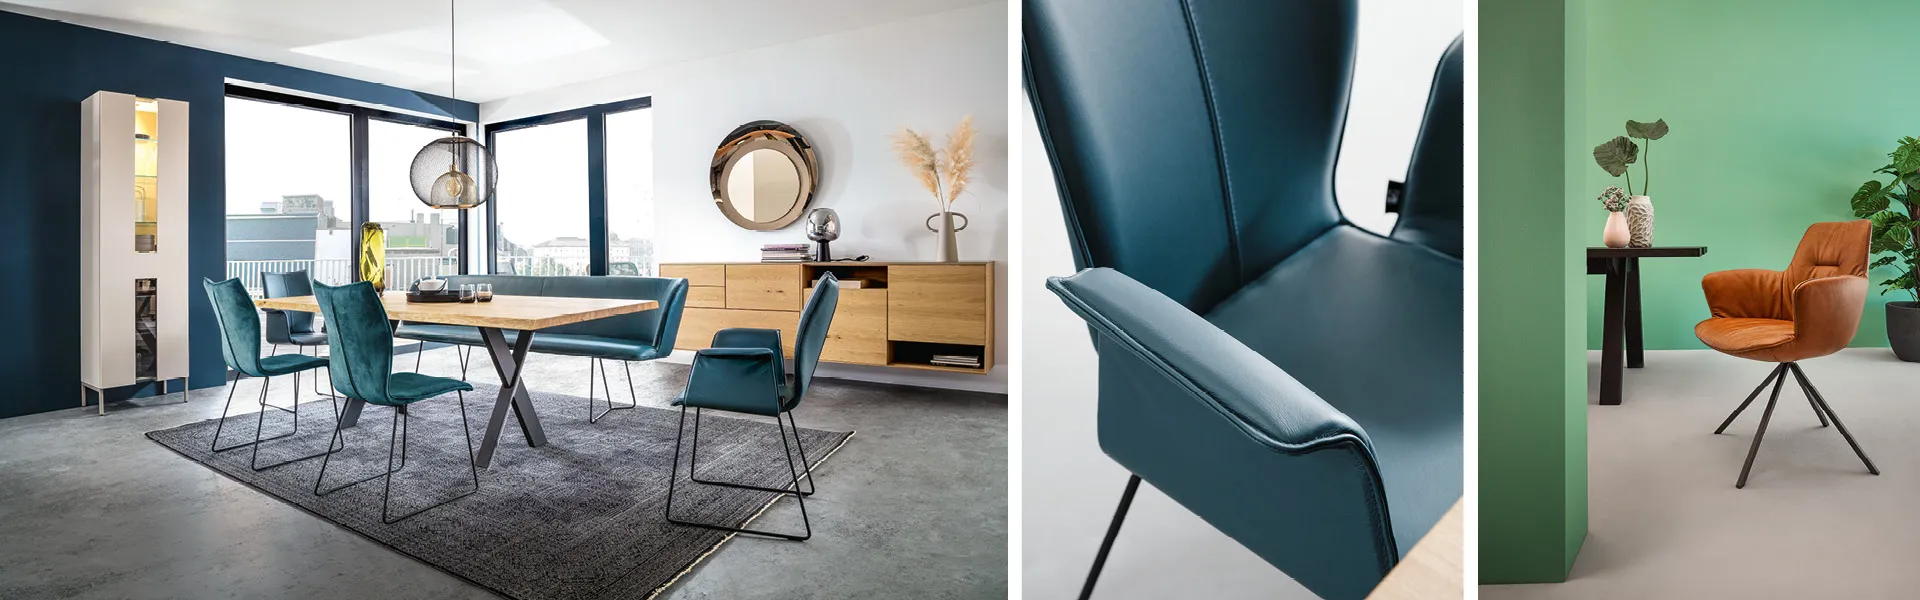 Stühle fürs Esszimmer gibt es in verschiedenen Farben, Formen und mit unterschiedlichen Bezügen. Die Auswahl ist groß.